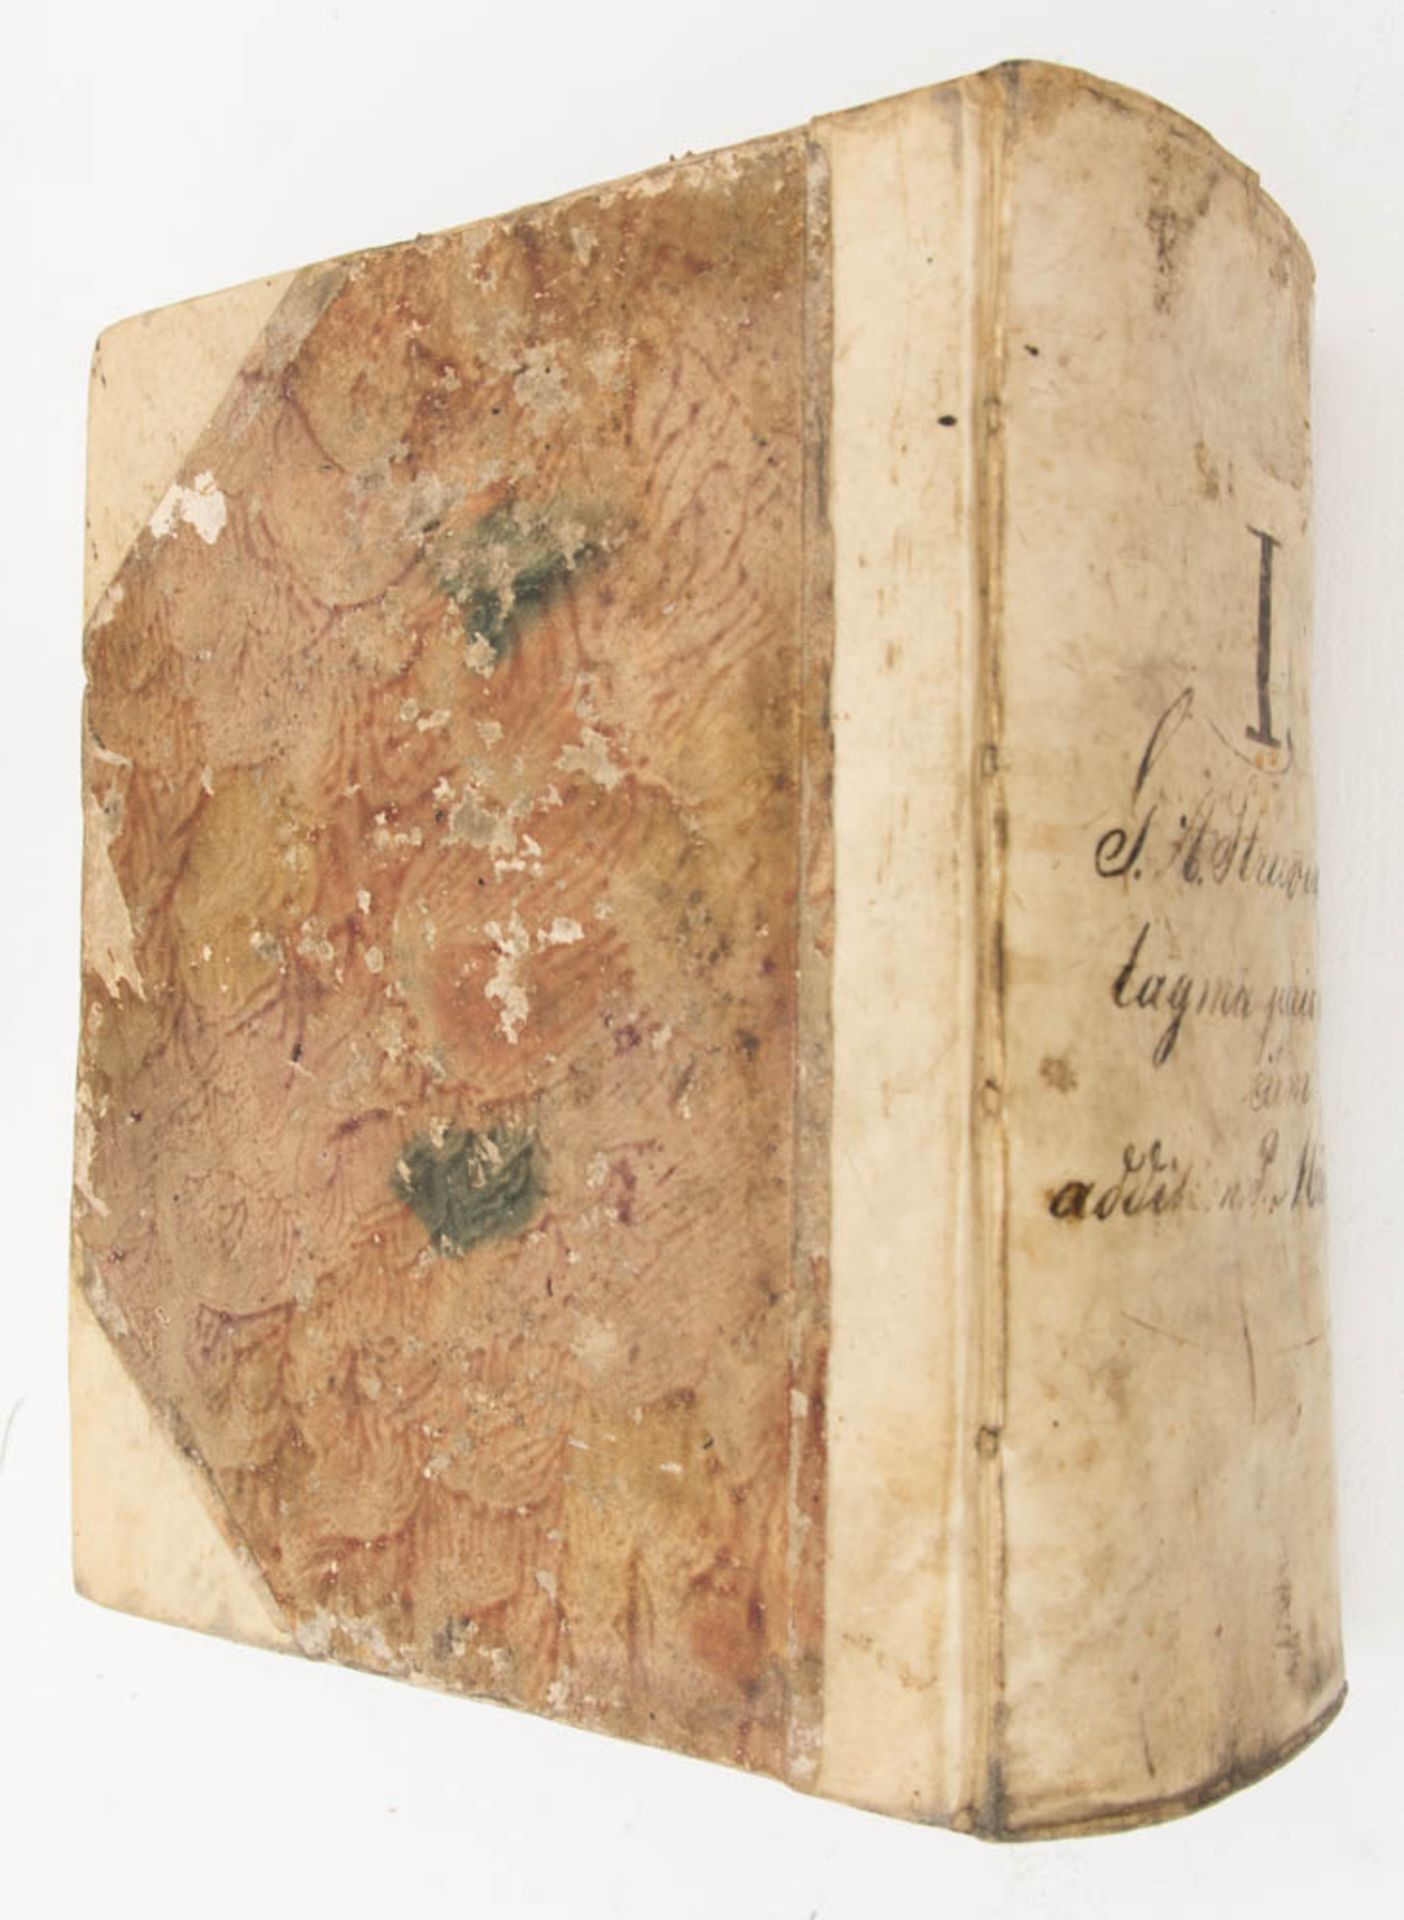 Jurisprudentiae Band 1 und 3, 1663/ 1738.Jurisprudentiae secundum ordinem pandectarum. Juris civilis - Bild 3 aus 5